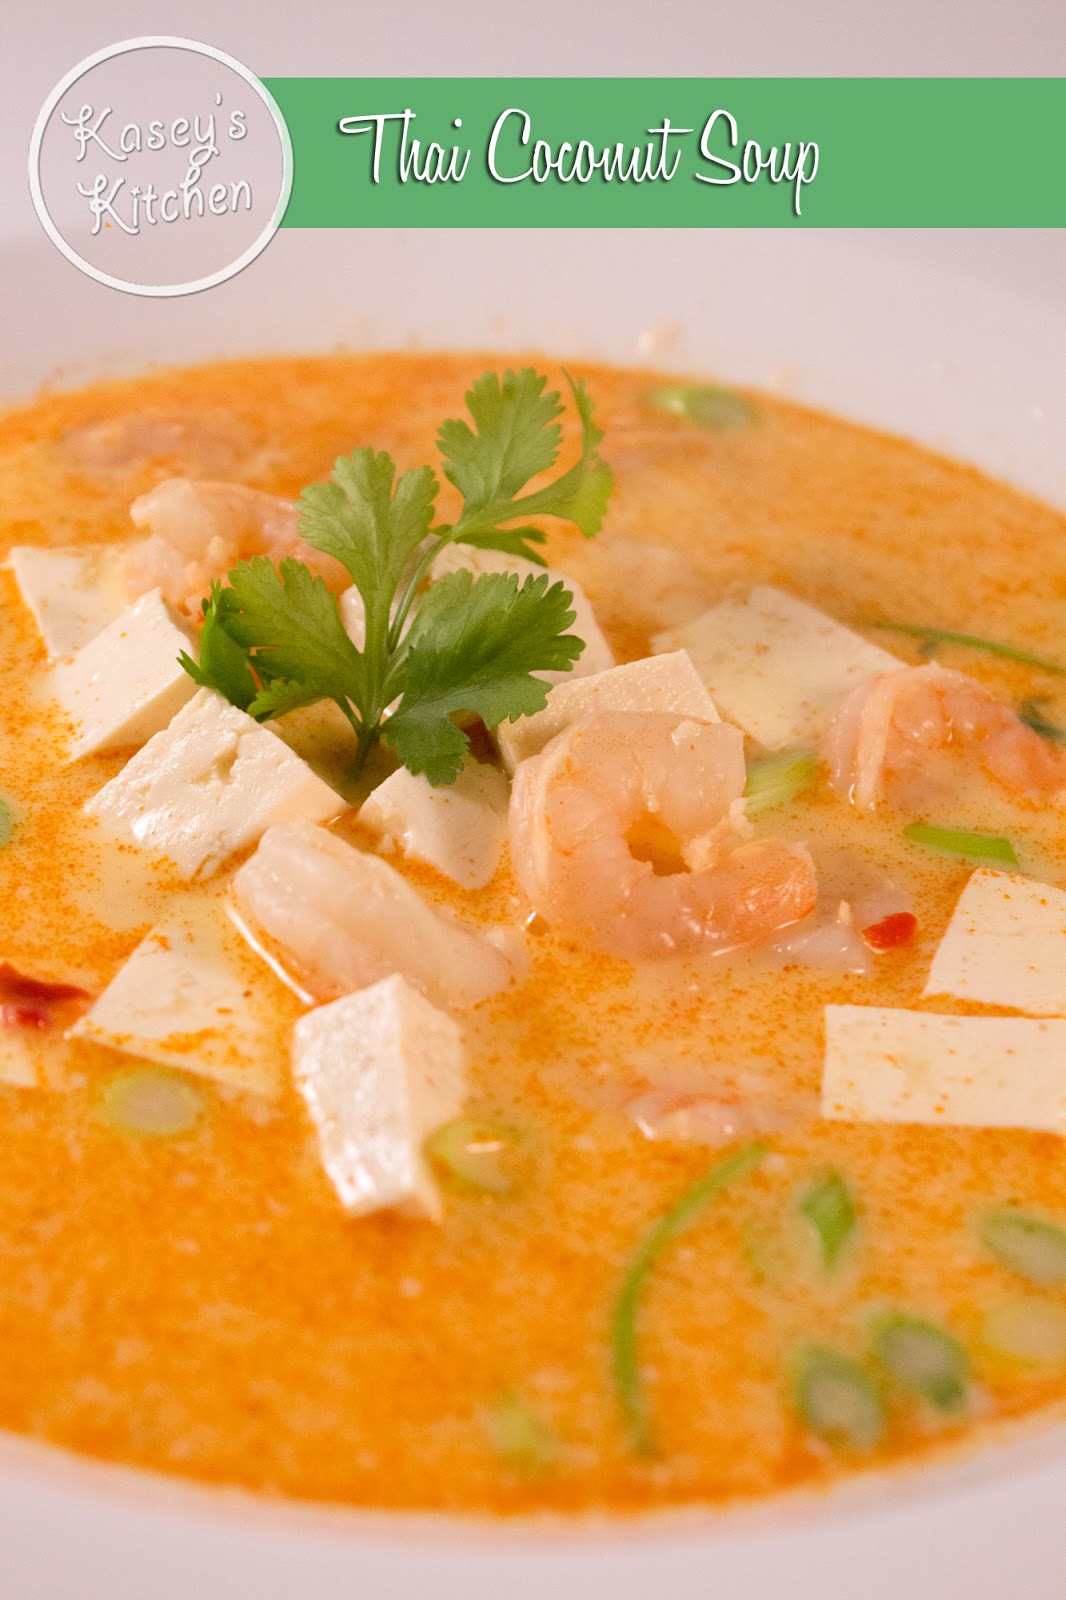 Kasey's Kitchen: Thai Coconut Soup